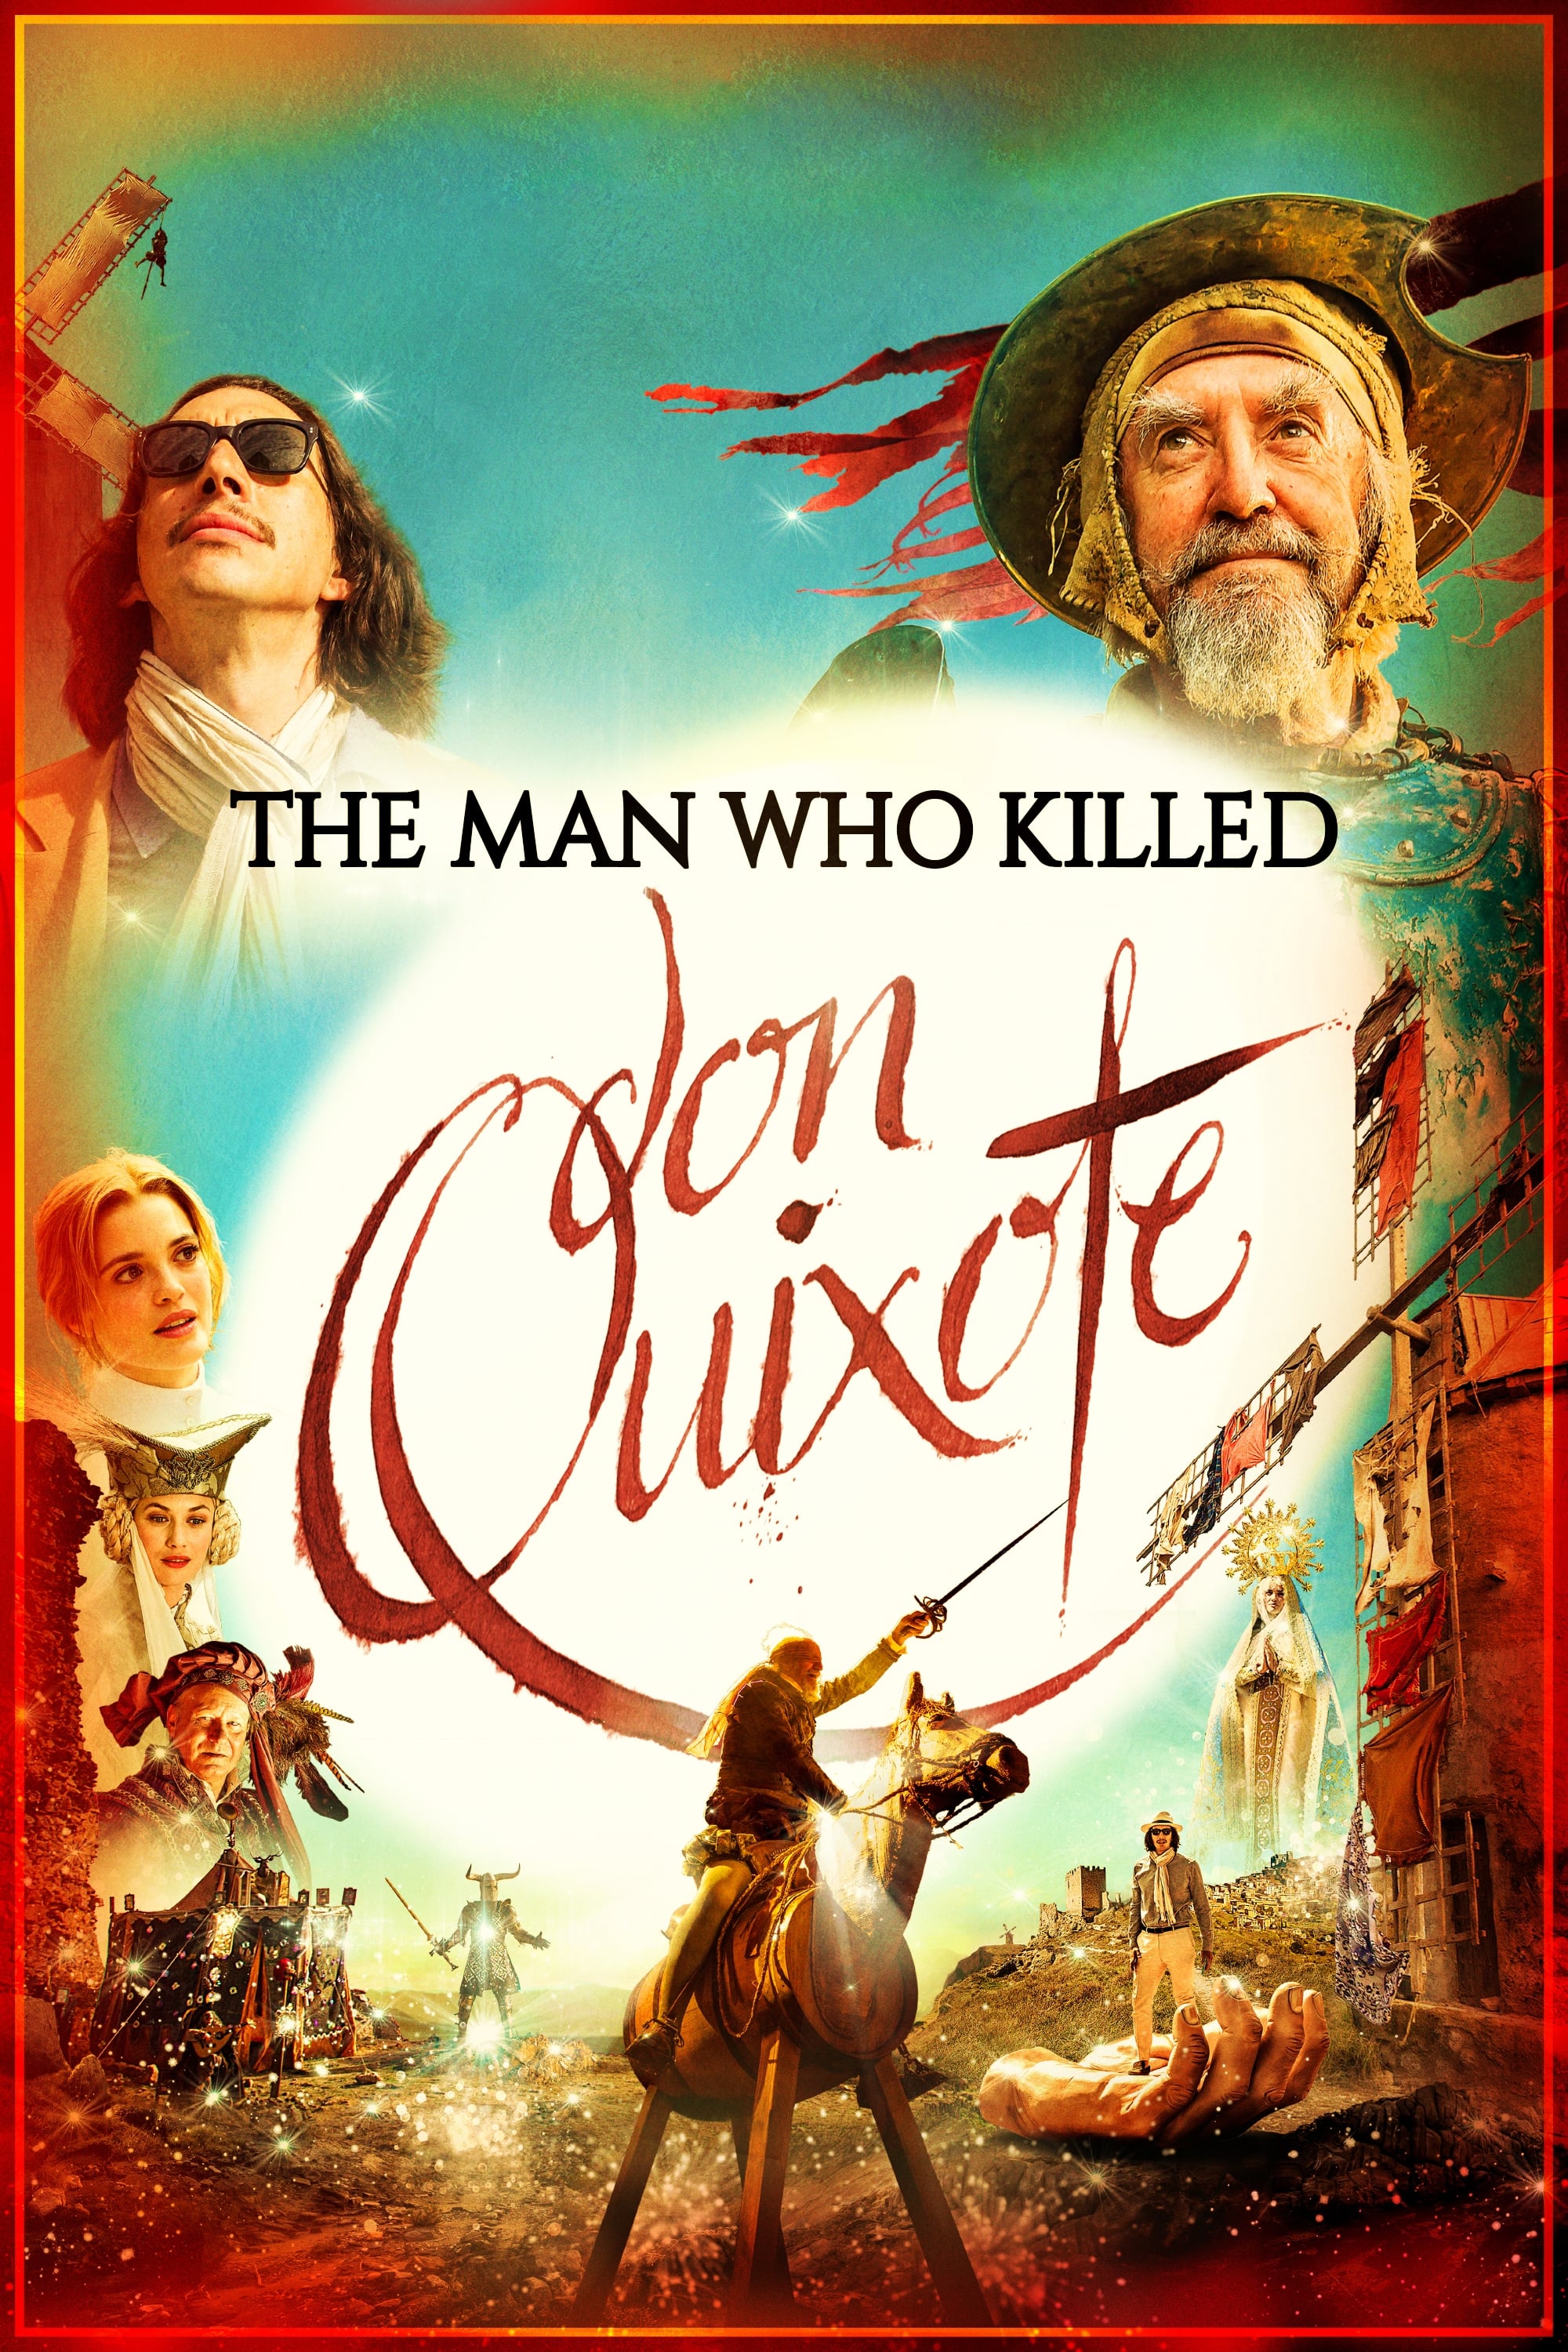 2018 The Man Who Killed Don Quixote